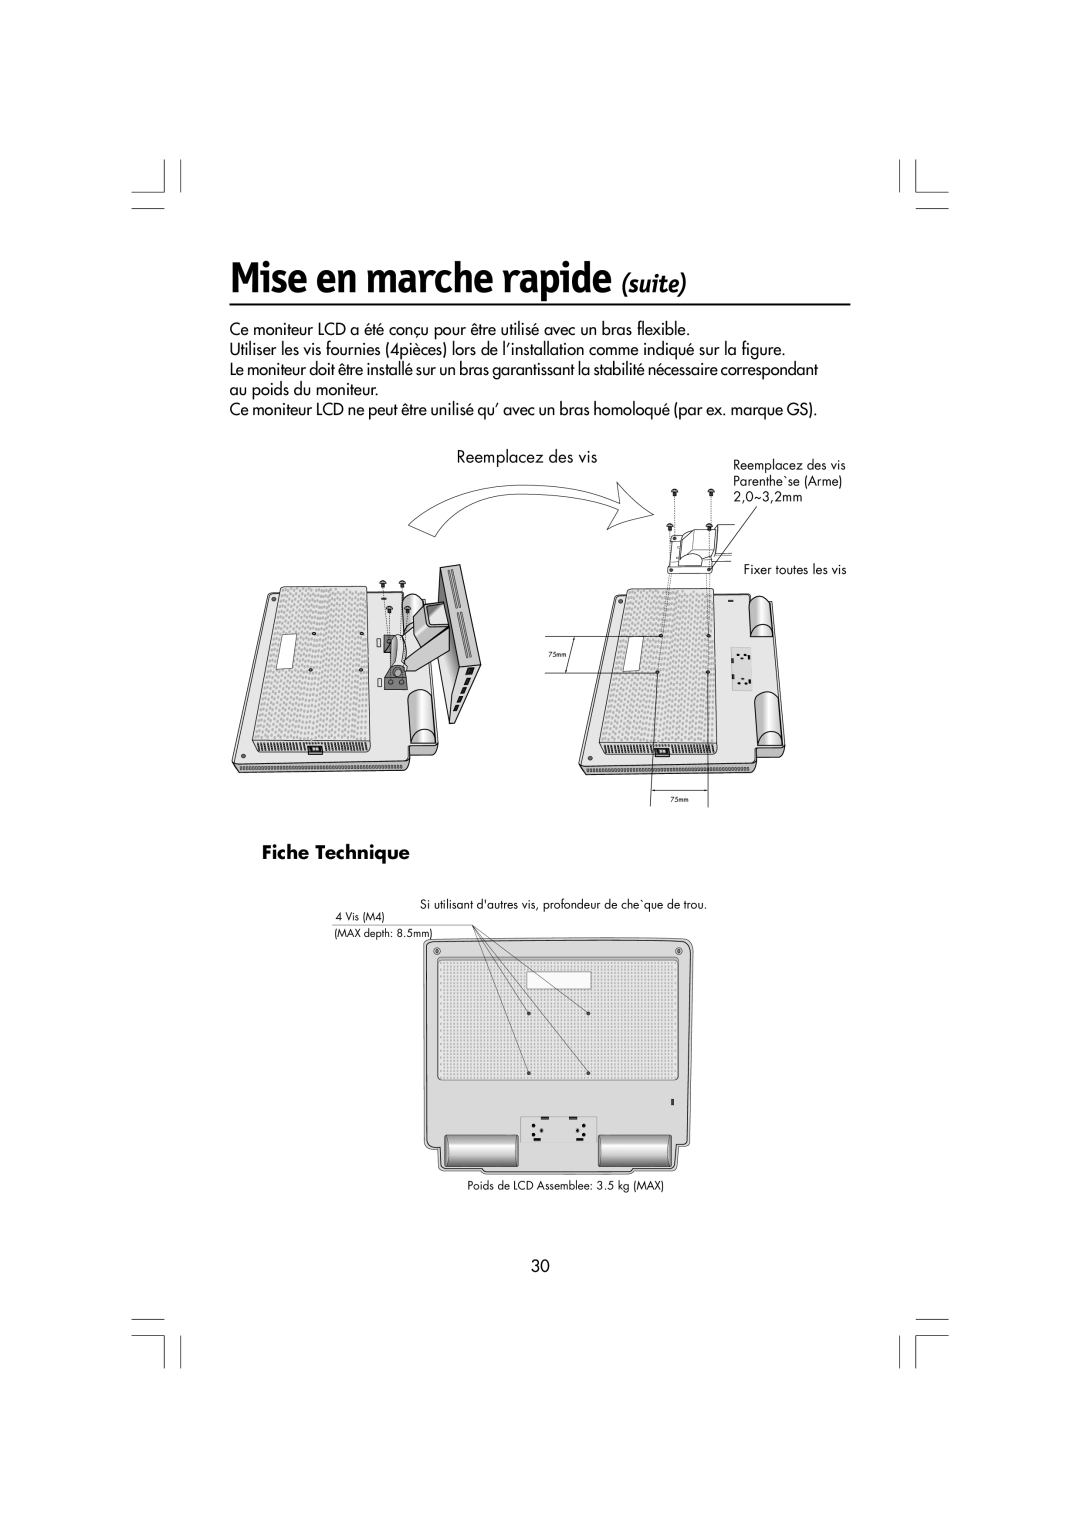 Mitsubishi Electronics LCD1560M manual Fiche Technique, Mise en marche rapide suite 